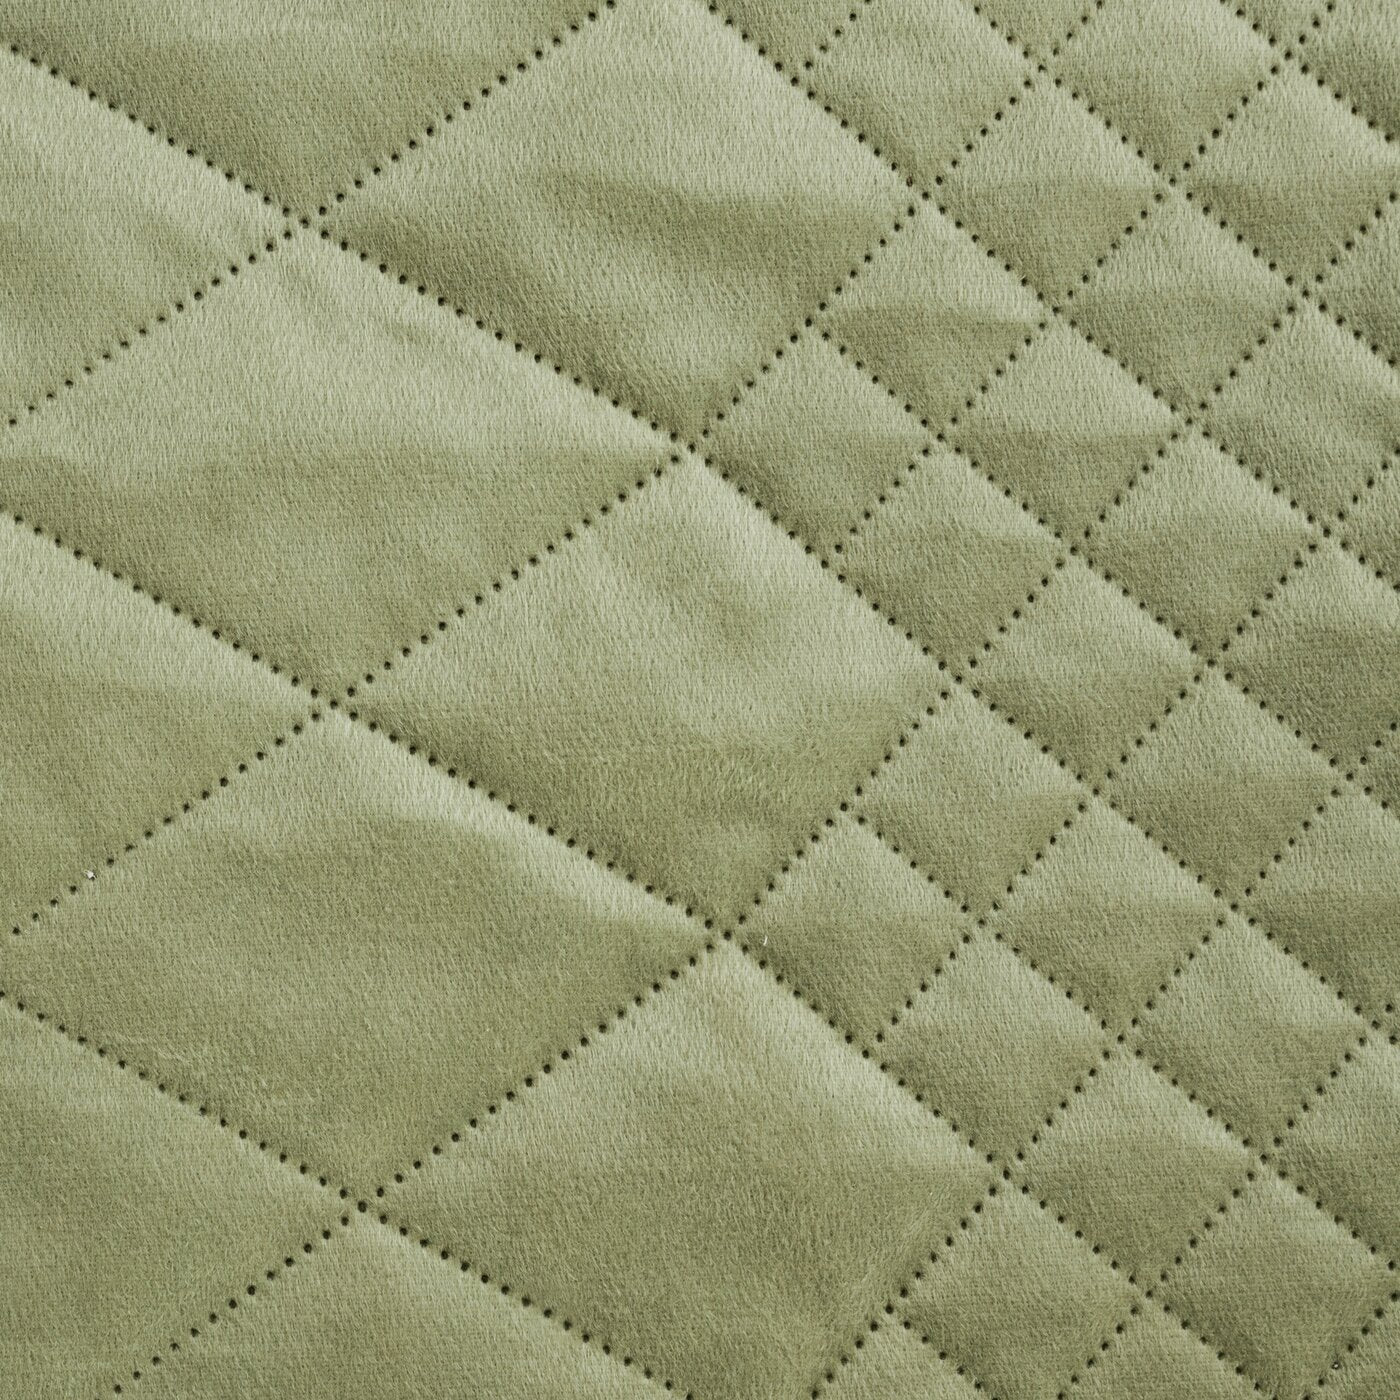 Cuvertură de Pat din catifea matlasată prin presare la cald model geometric verde deschis LUIZ 3 Perdele de Poveste